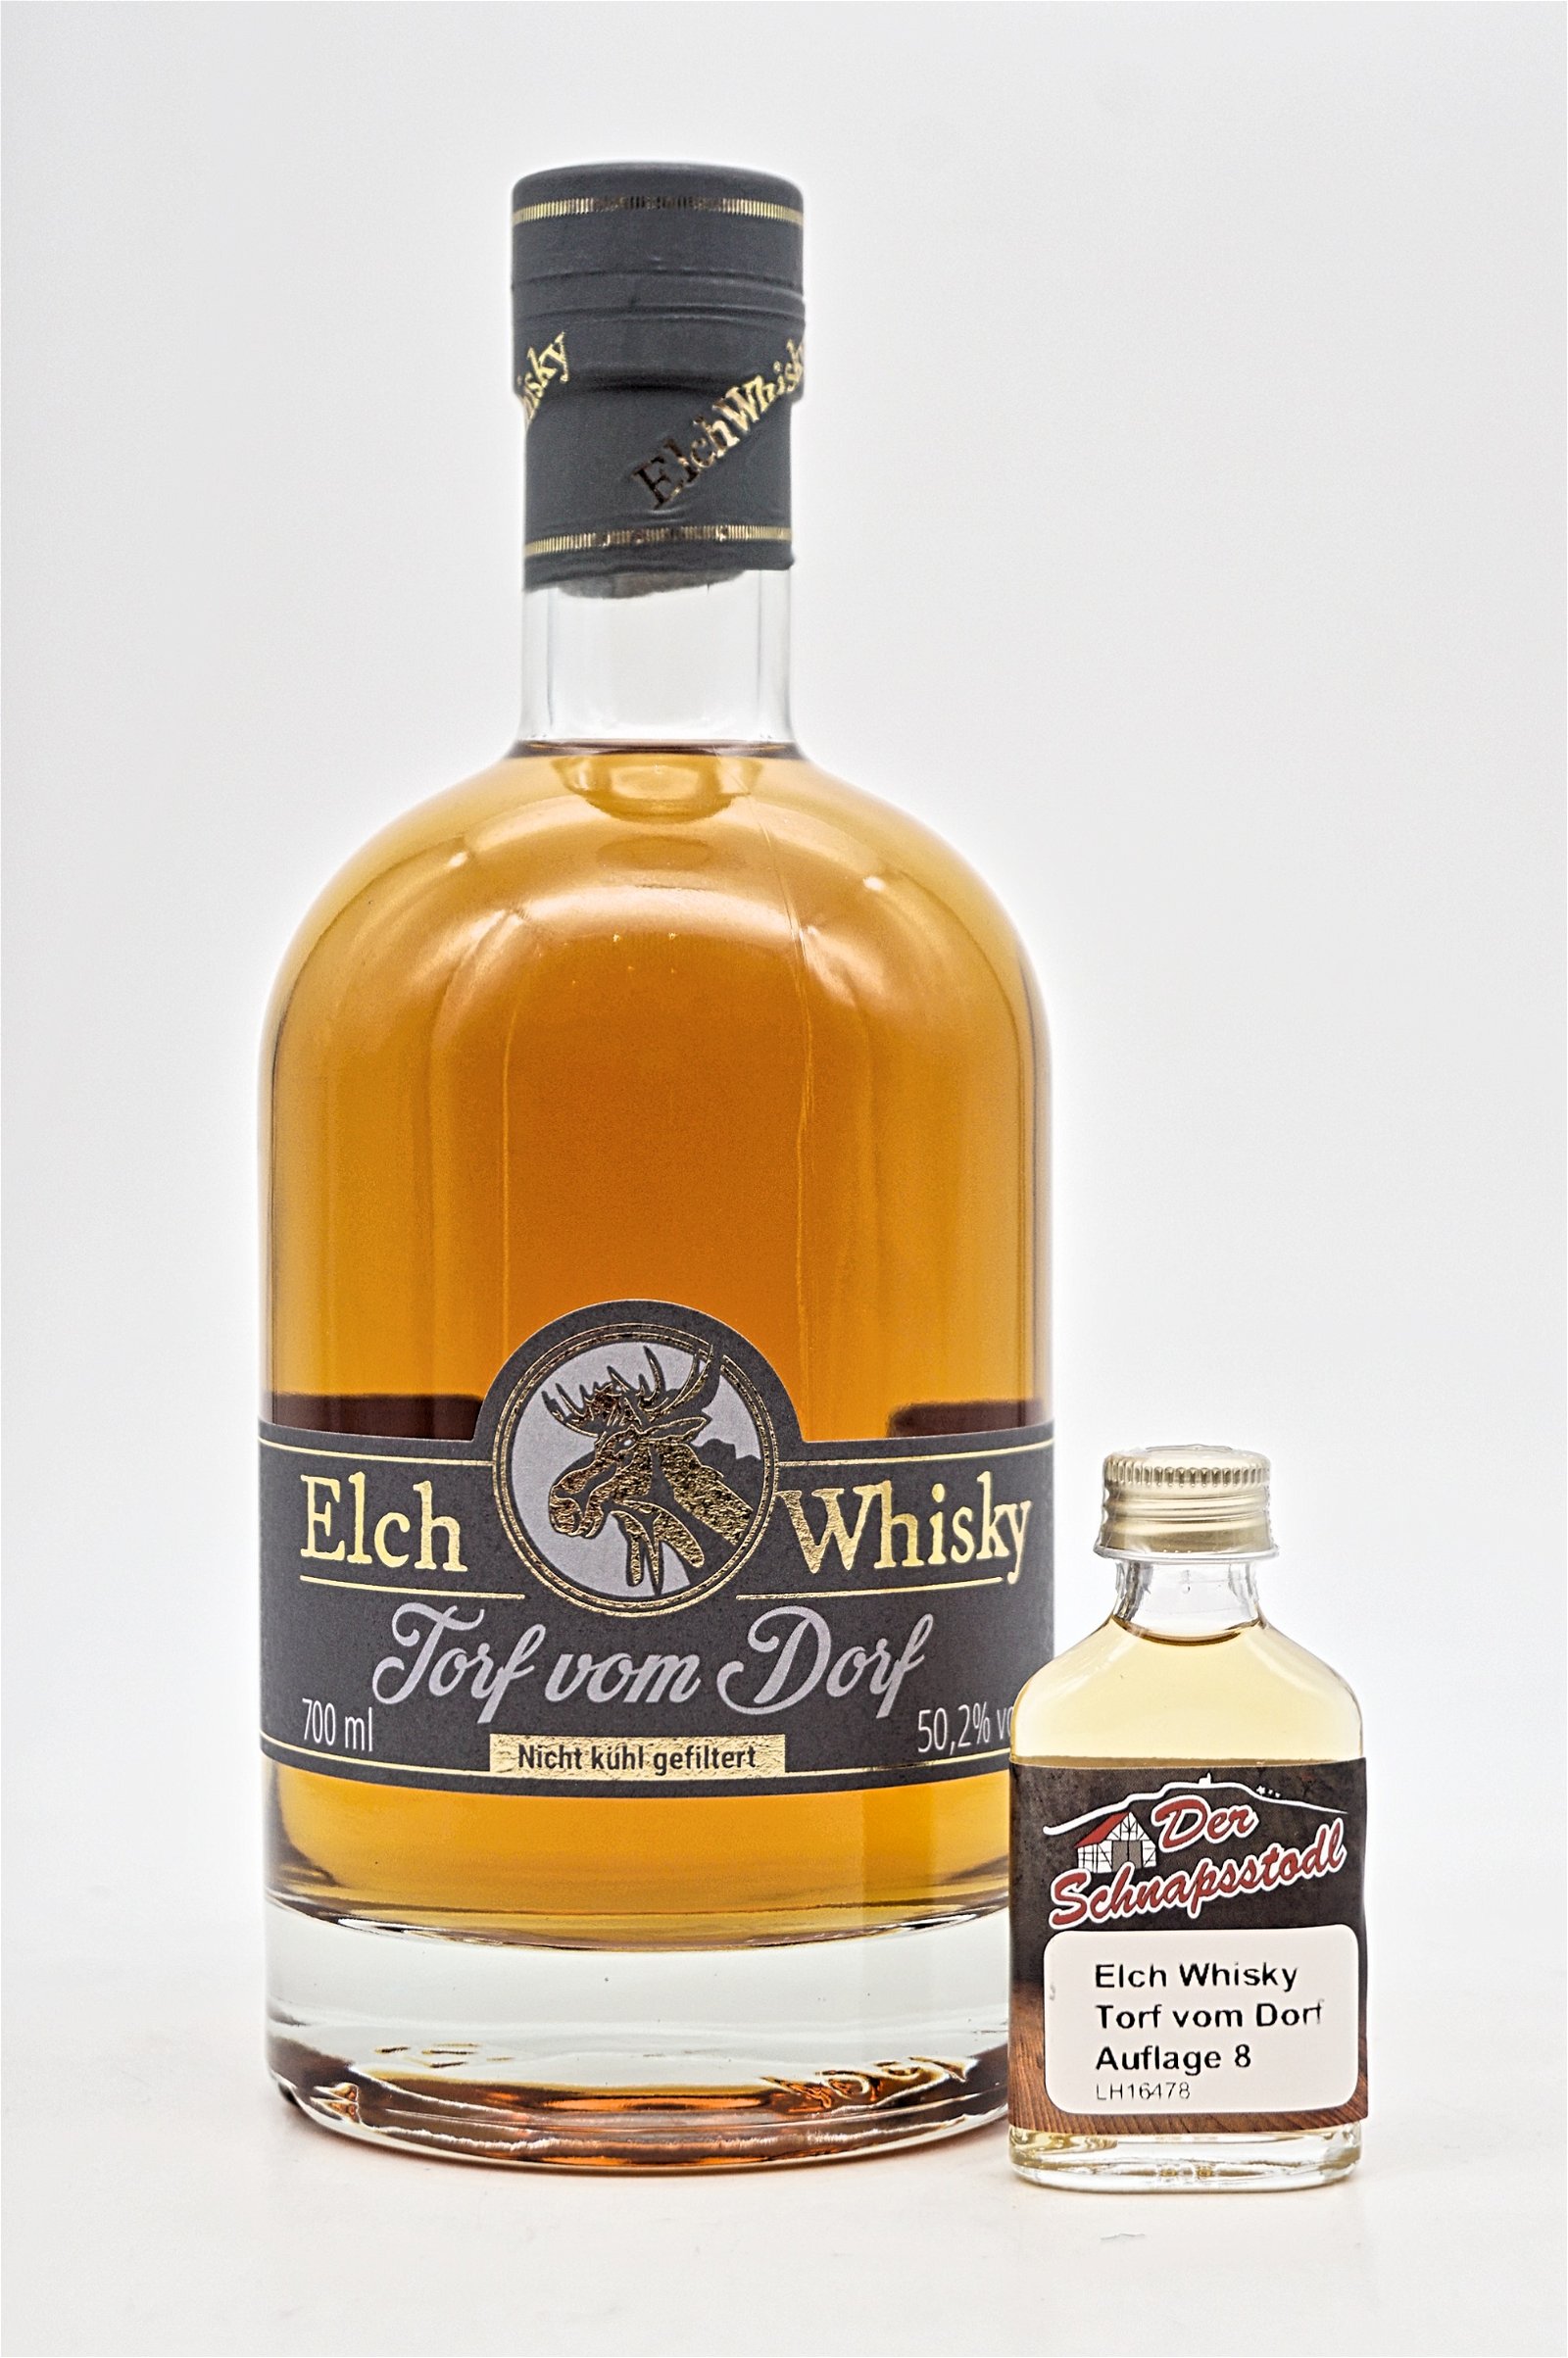 Elch Whisky Torf vom Dorf (Auflage 7) 20ml Sample